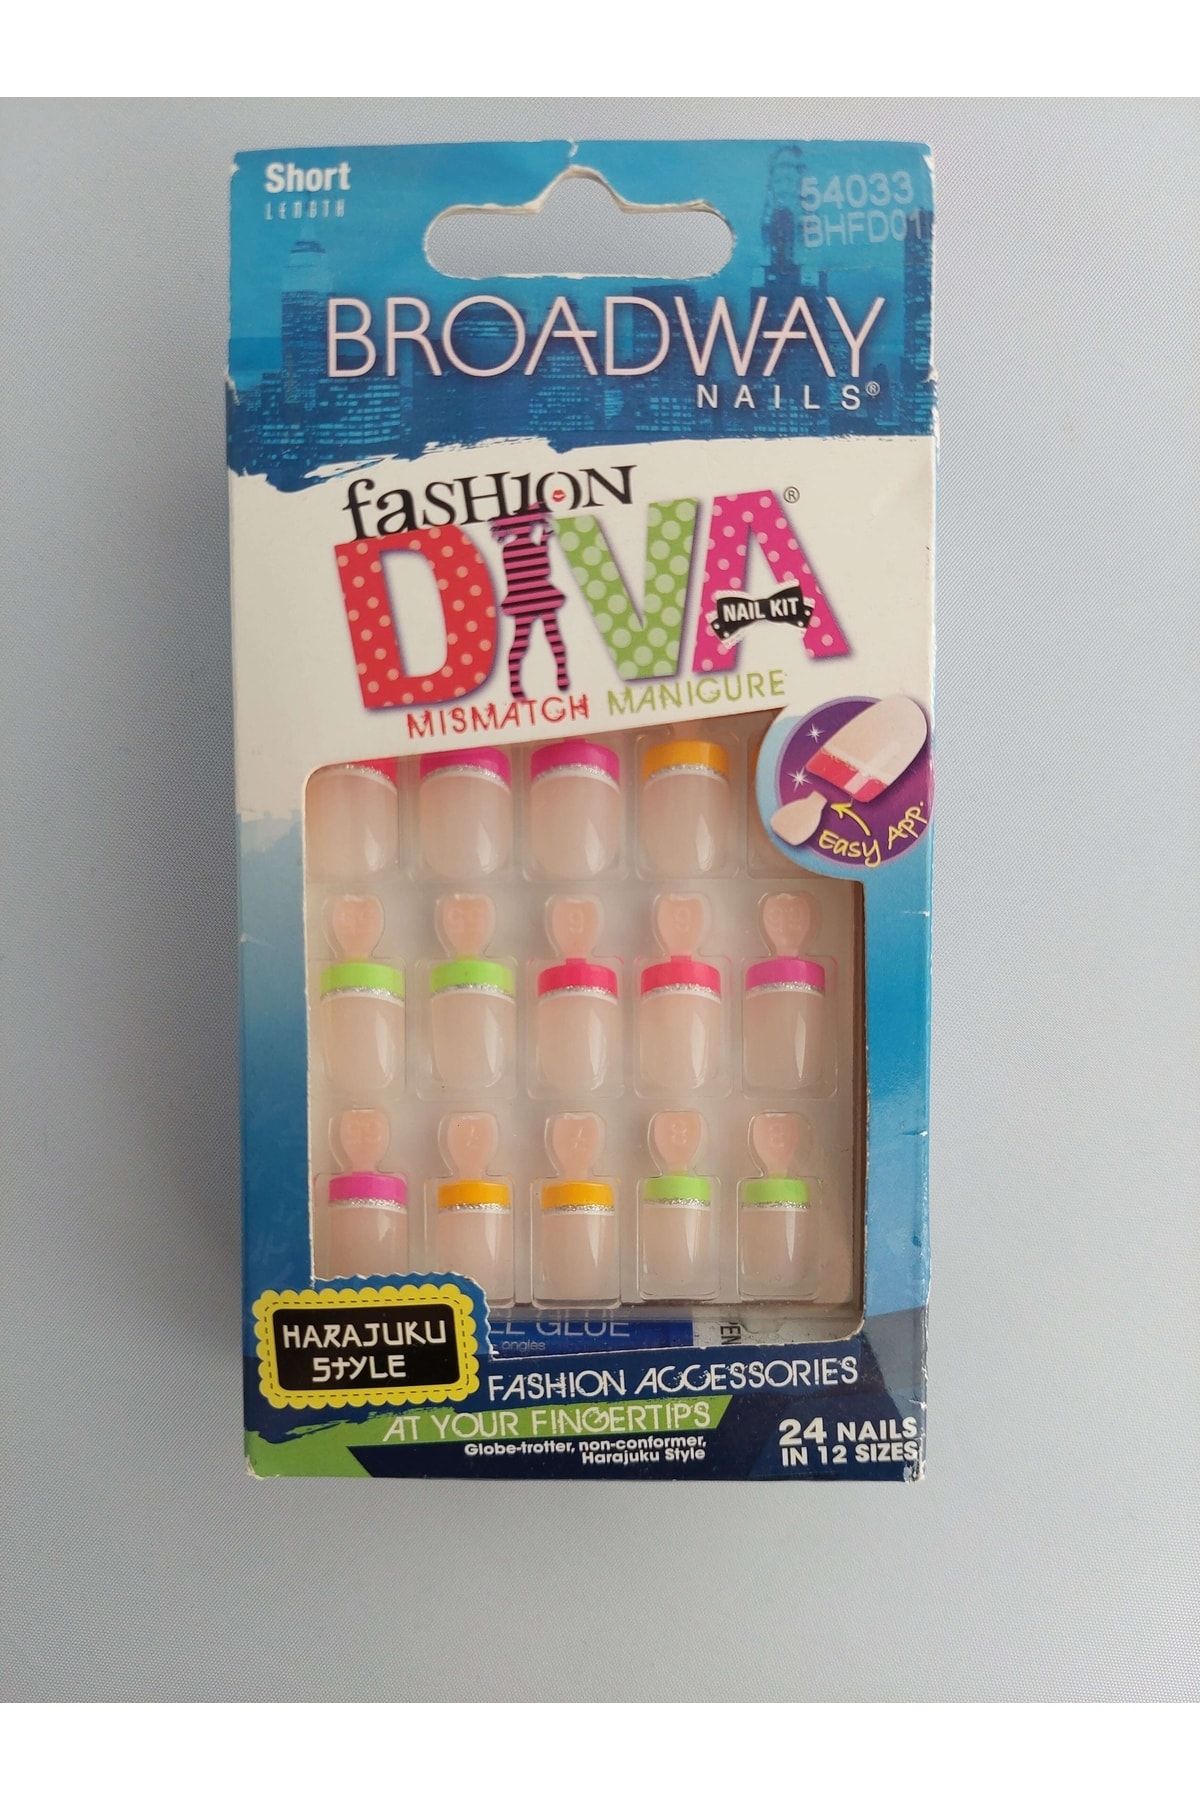 Broadway Nails Broadway Takma Tırnak Seti Tırnak Yapıştırıcılı - Bhfd01 - 54033